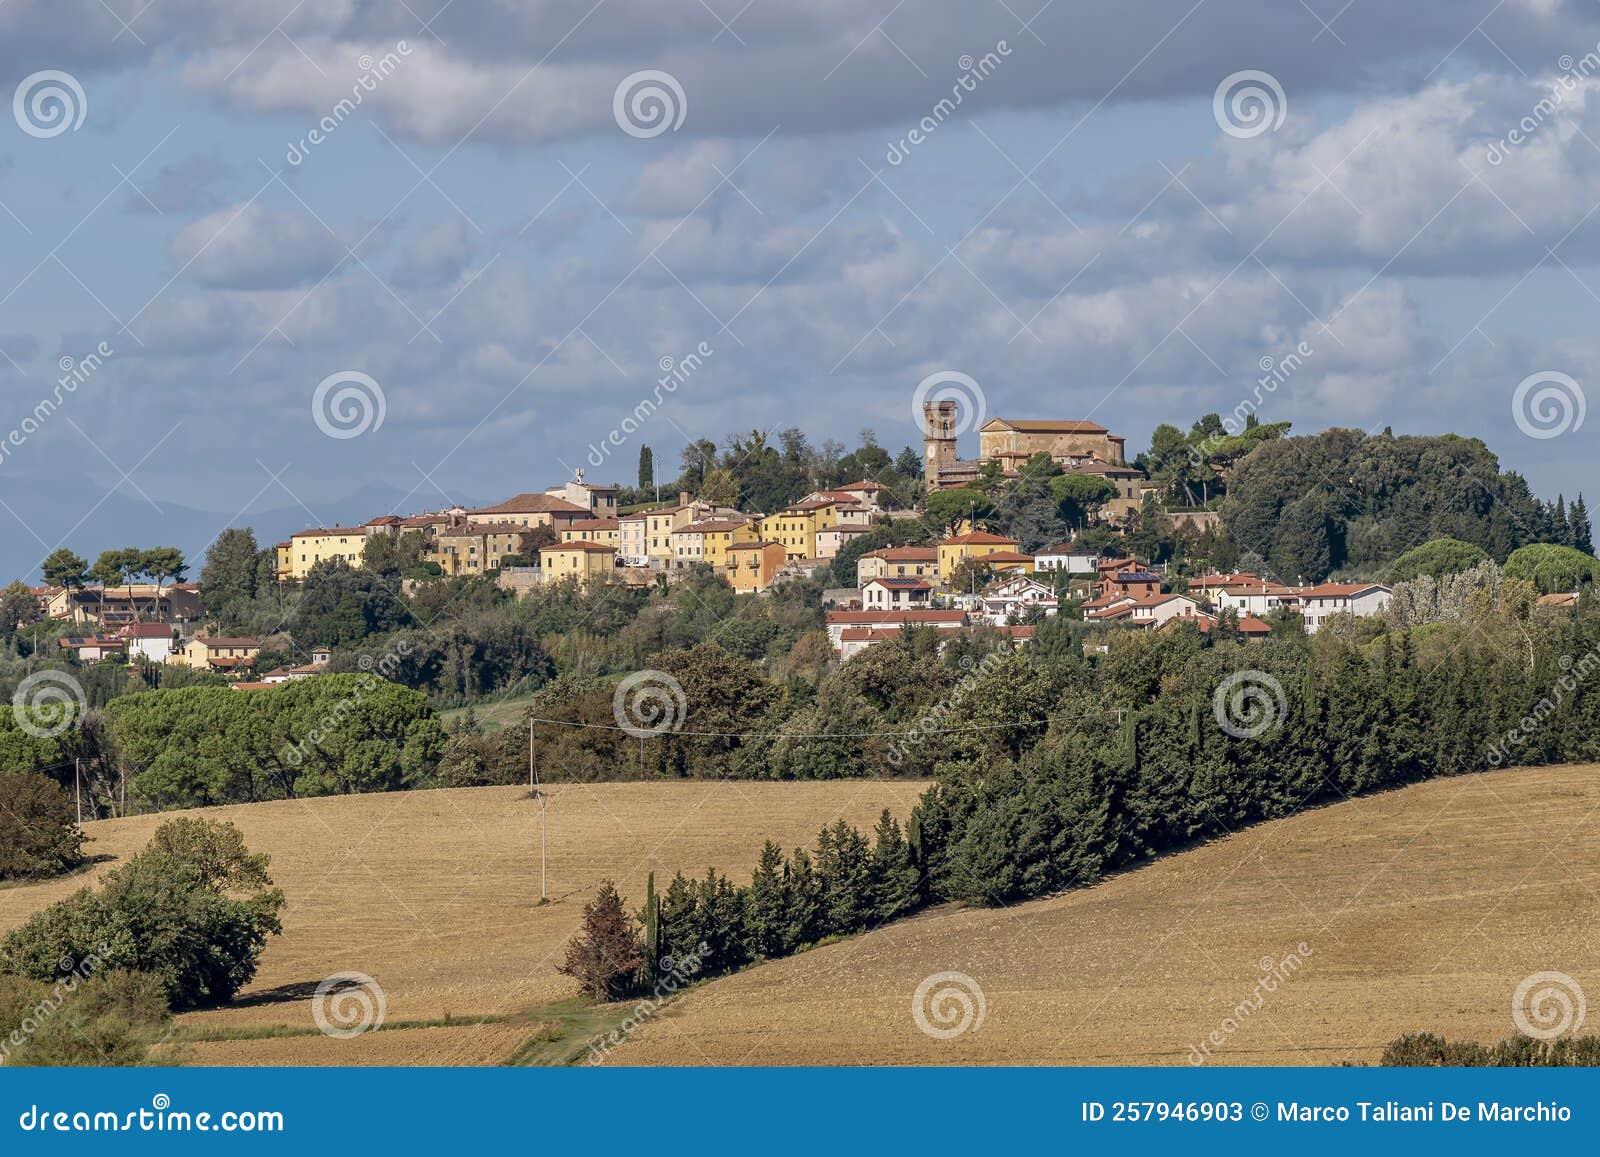 panoramic view of lorenzana, pisa, italy, and the surrounding countryside